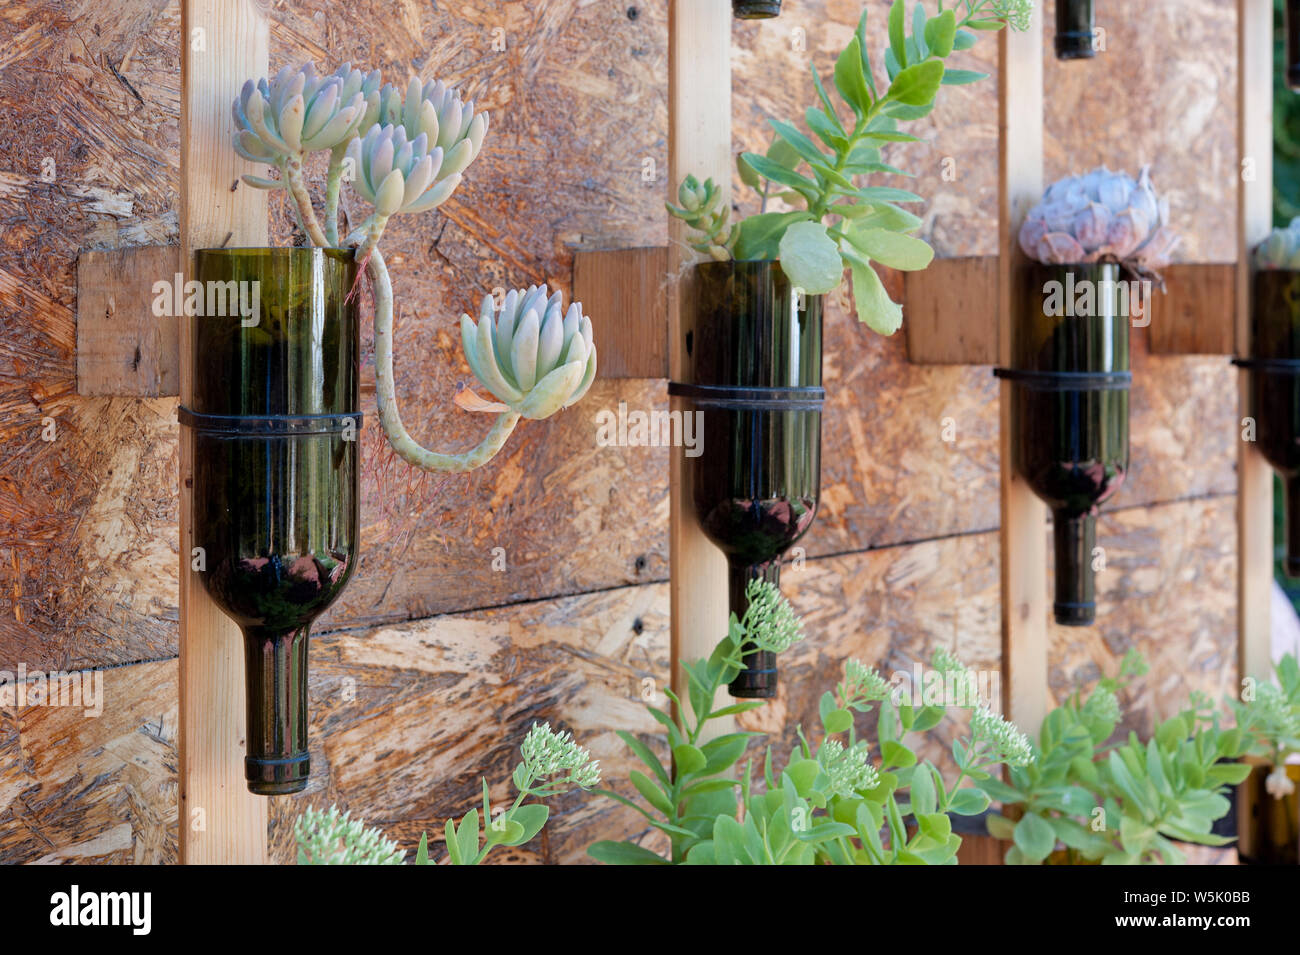 Wein Flaschen als ein saftiges Blume Pflanzen, die an der Wand hing, recycelt. Stockfoto